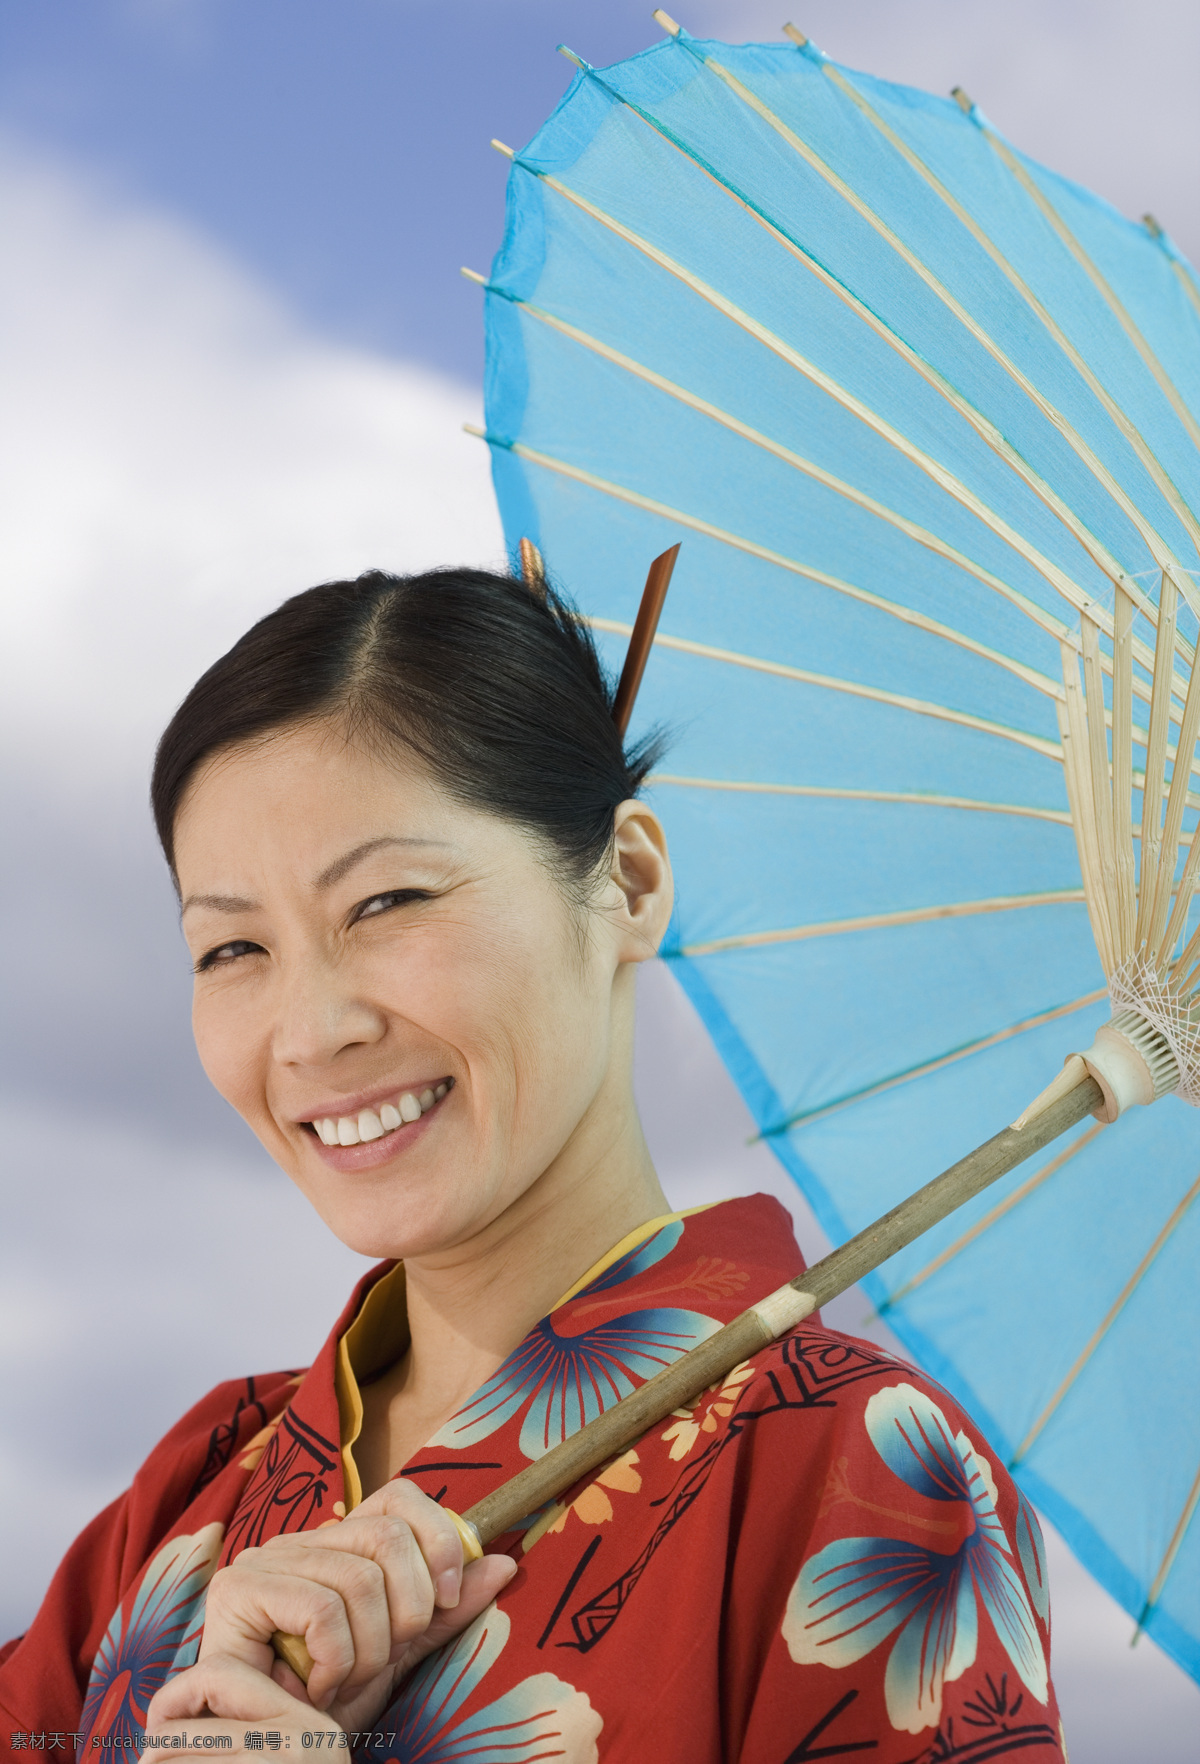 穿着 和服 女人 女性 日本人 民族服装 伞 传统服饰 微笑 开心 美女图片 人物图片